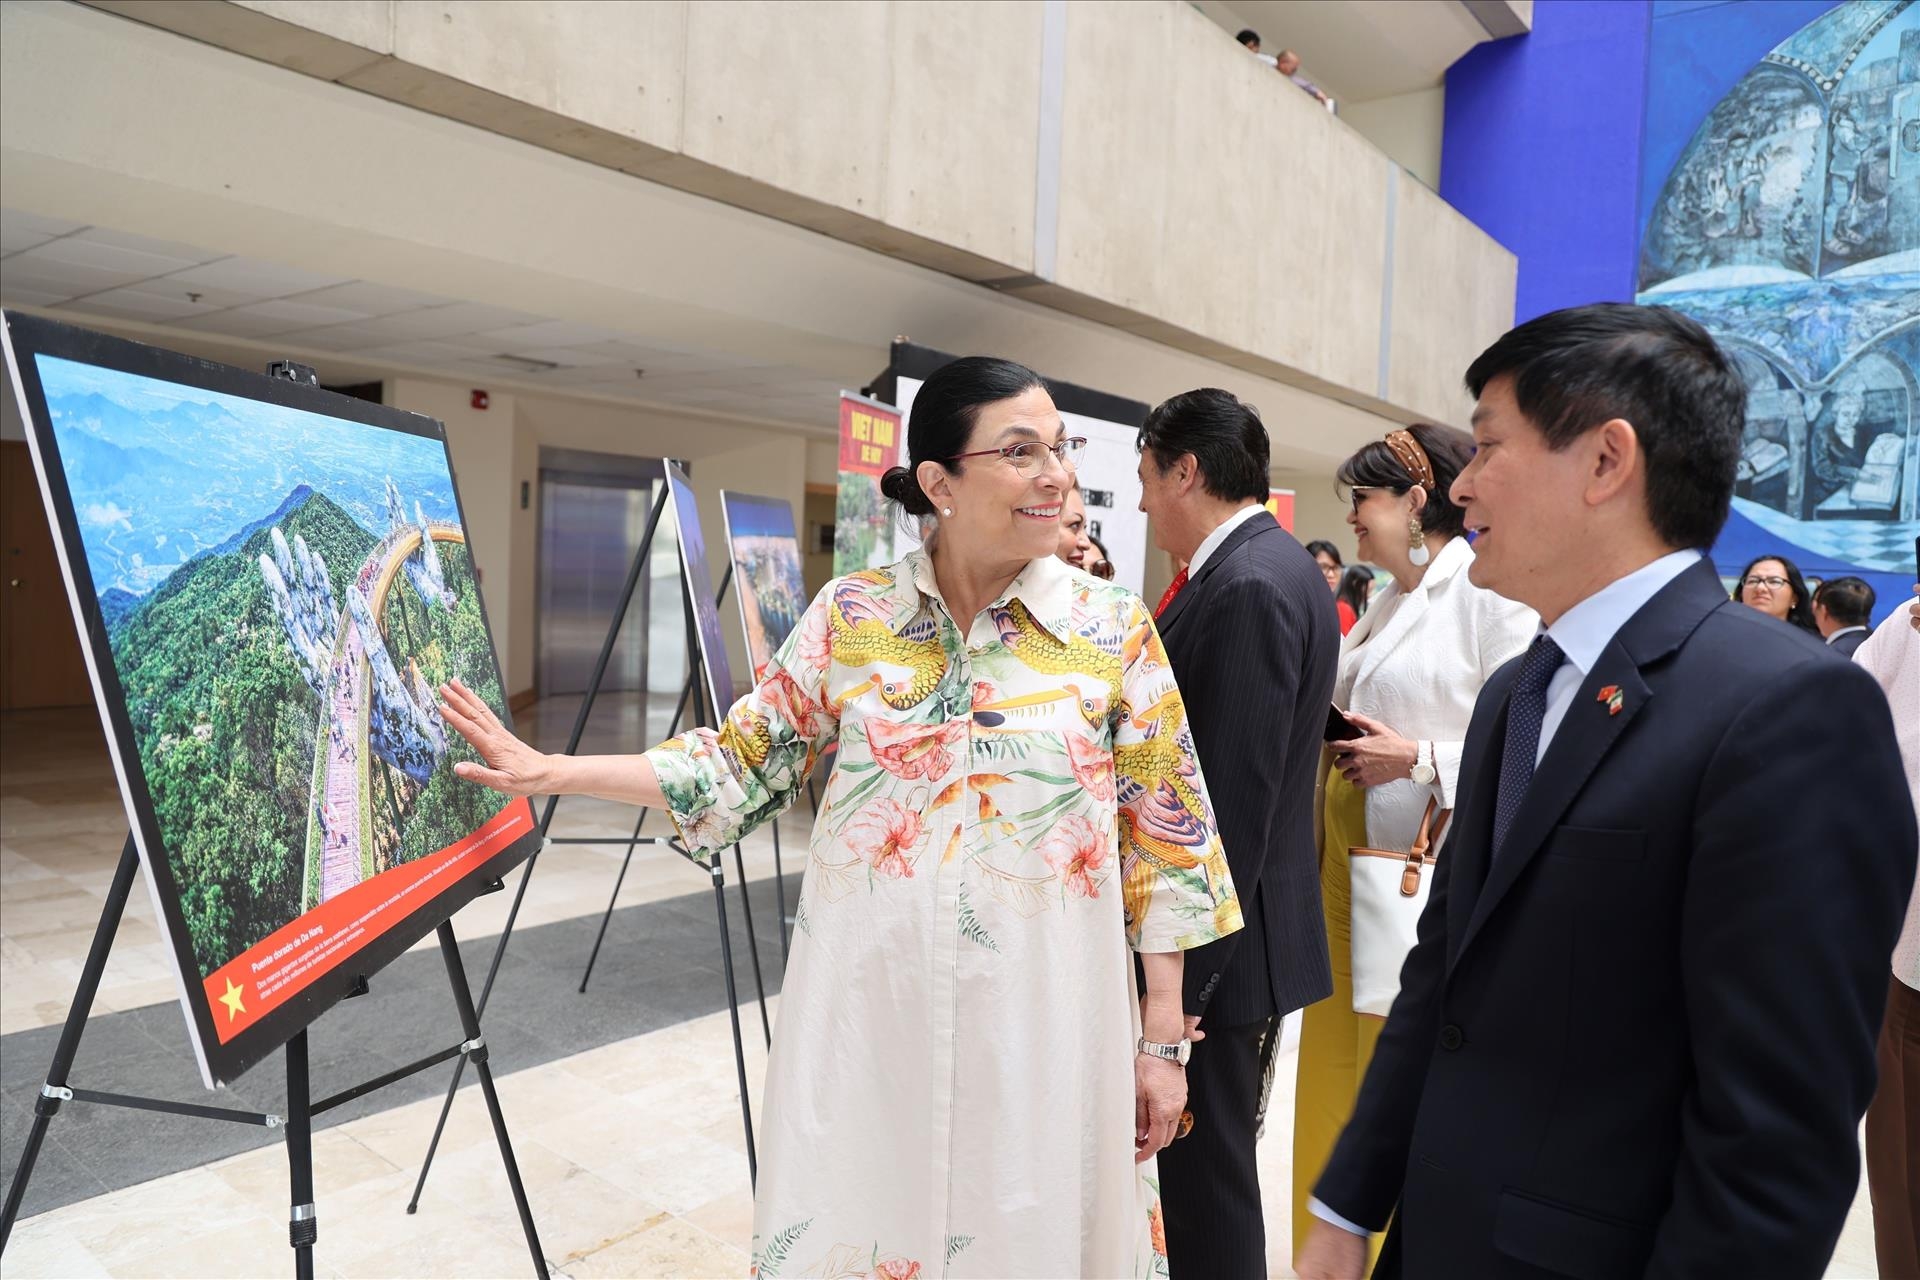 墨西哥众议长马塞拉·格拉·卡斯蒂略与越南驻墨西哥大使阮横年参观越南风土人情图片展。